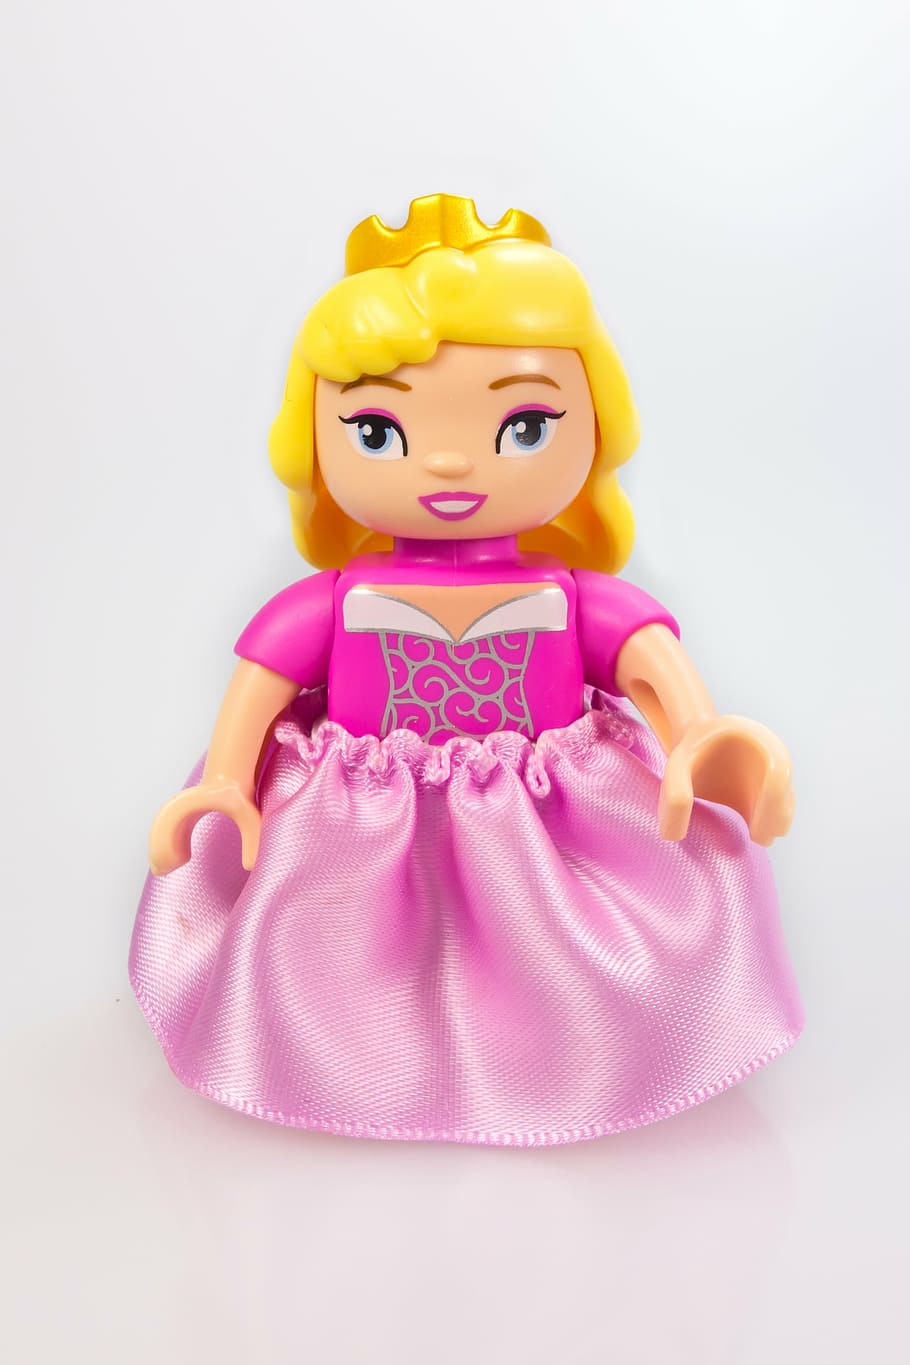 ピーチ姫レゴminifig, プリンセス, フィギュア, 男性, レゴ, デュプロ, おもちゃ, レゴメンヘン, カットアウト, ピンク色